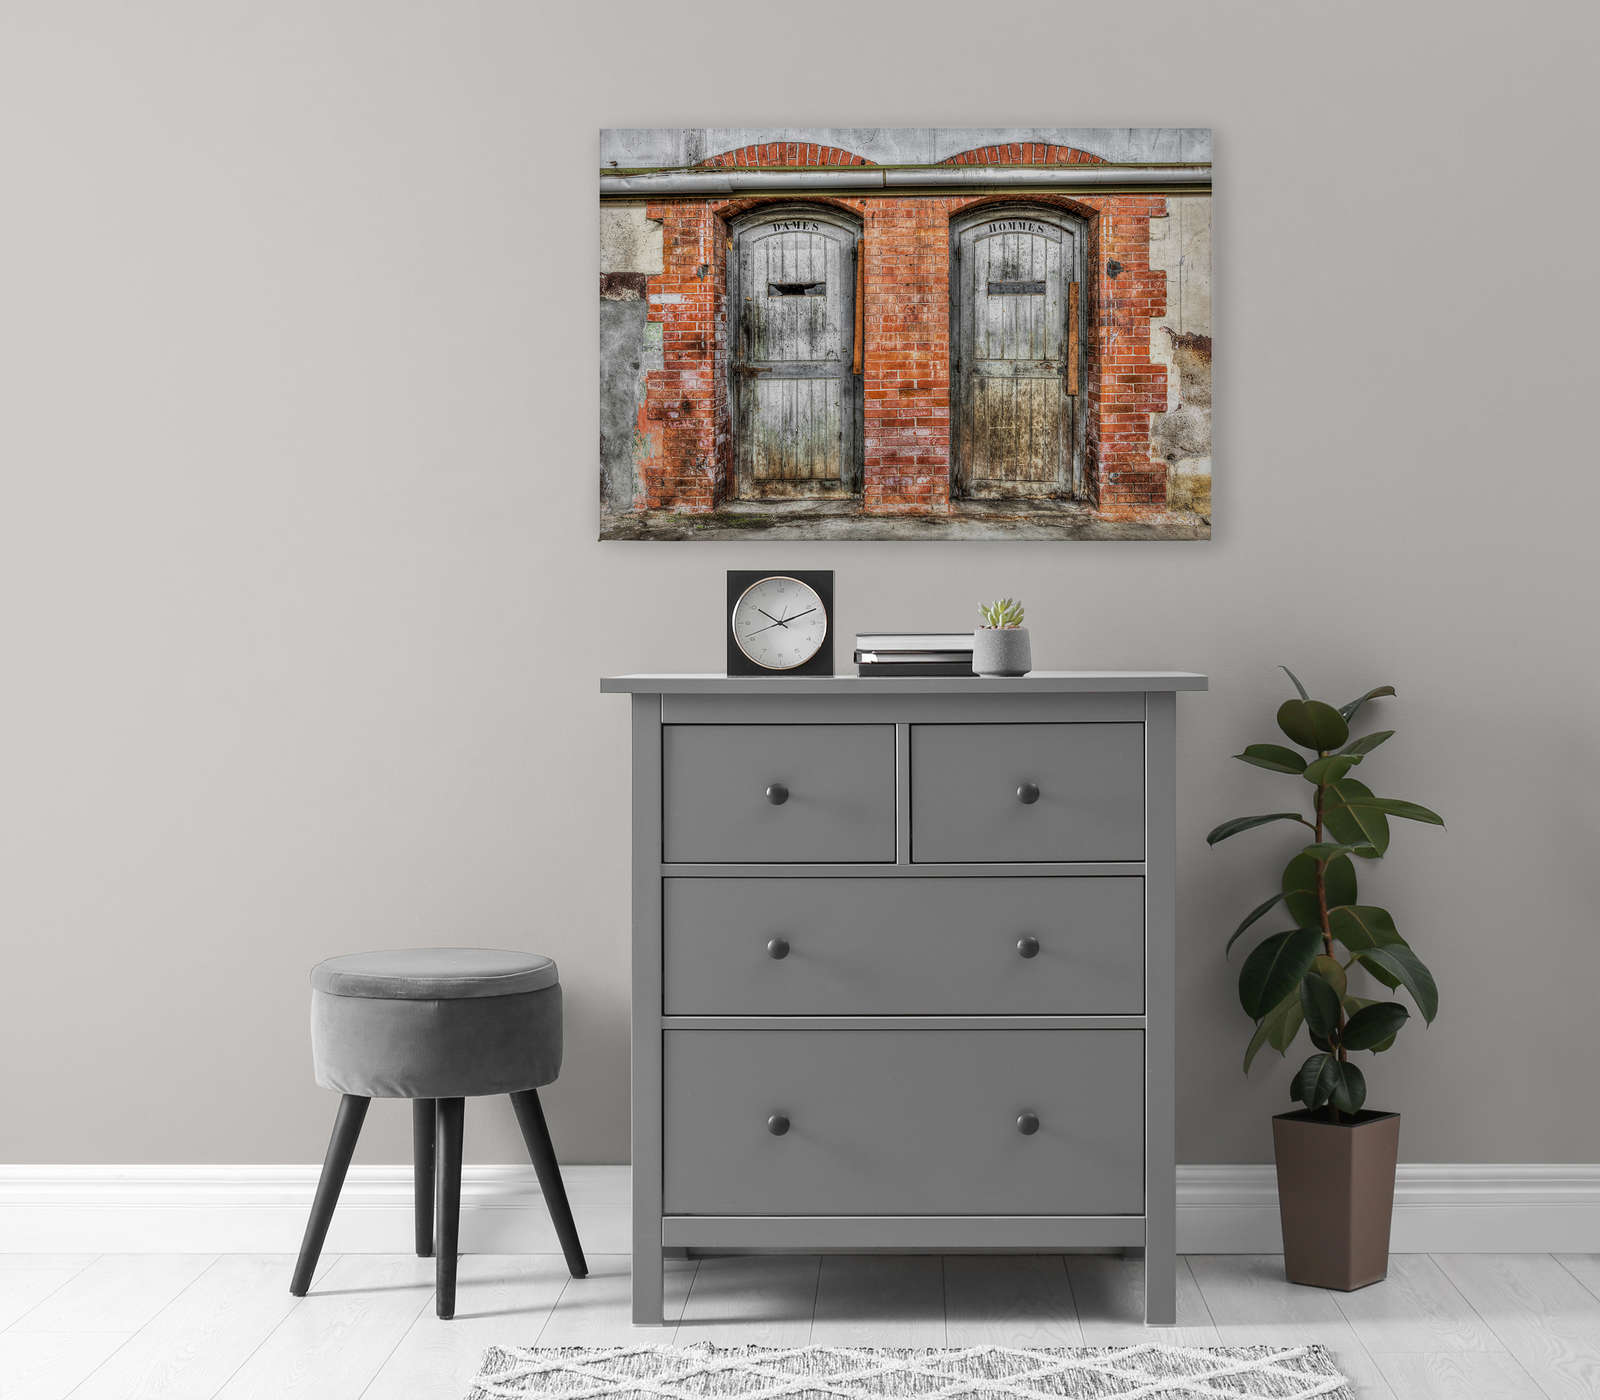             Quadro su tela Muro di pietra con porte di servizi igienici vintage | grigio, arancione, beige - 0,90 m x 0,60 m
        